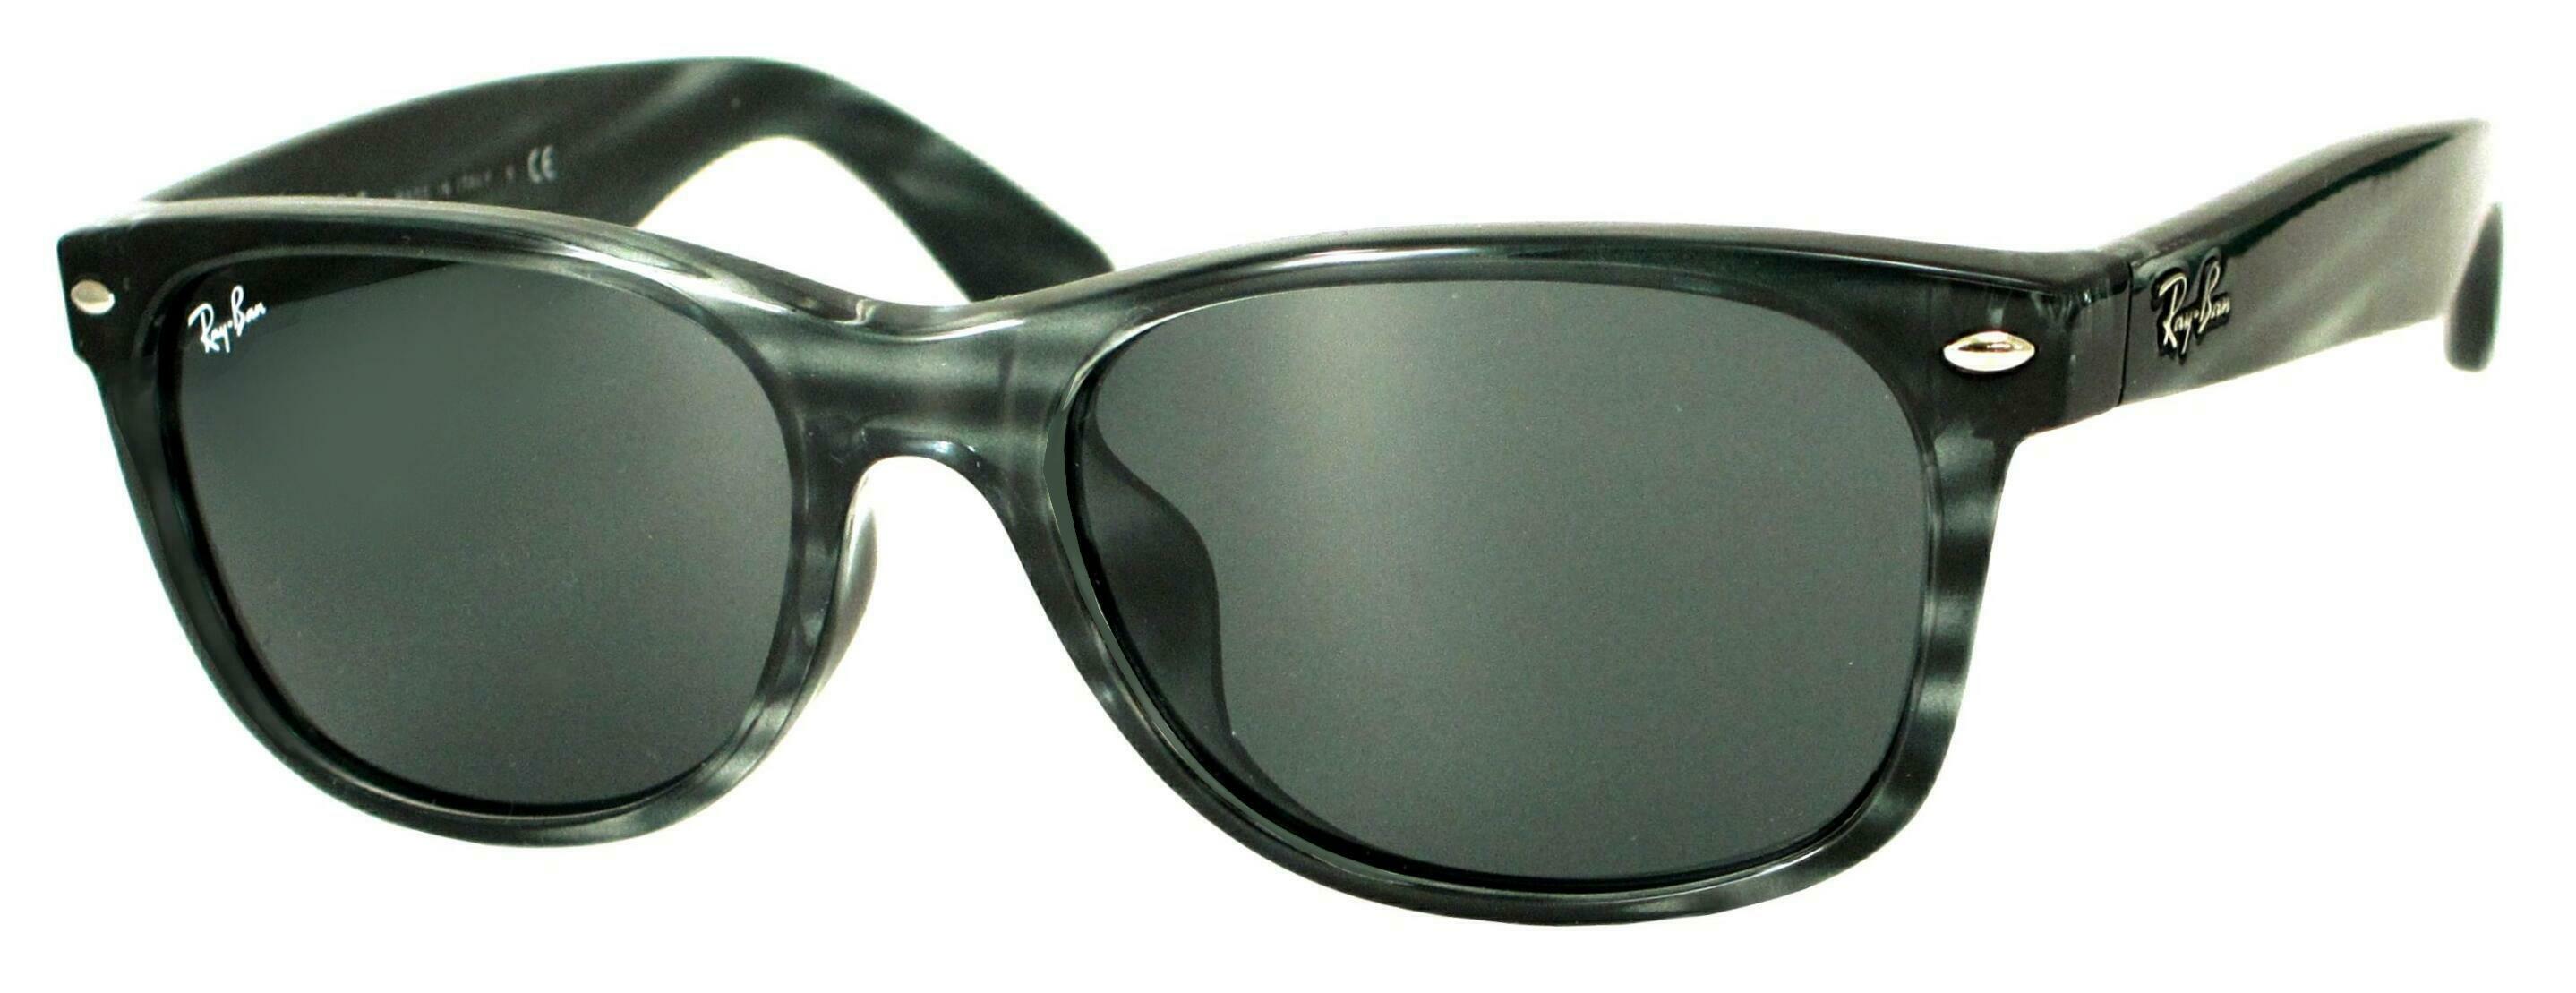 10160円 【60%OFF!】 レイバン サングラス RB2132F 6430B1 ニューウェイファーラー NEW WAYFARER フルフィットモデル 伊達メガネ 眼鏡 Ray-Ban